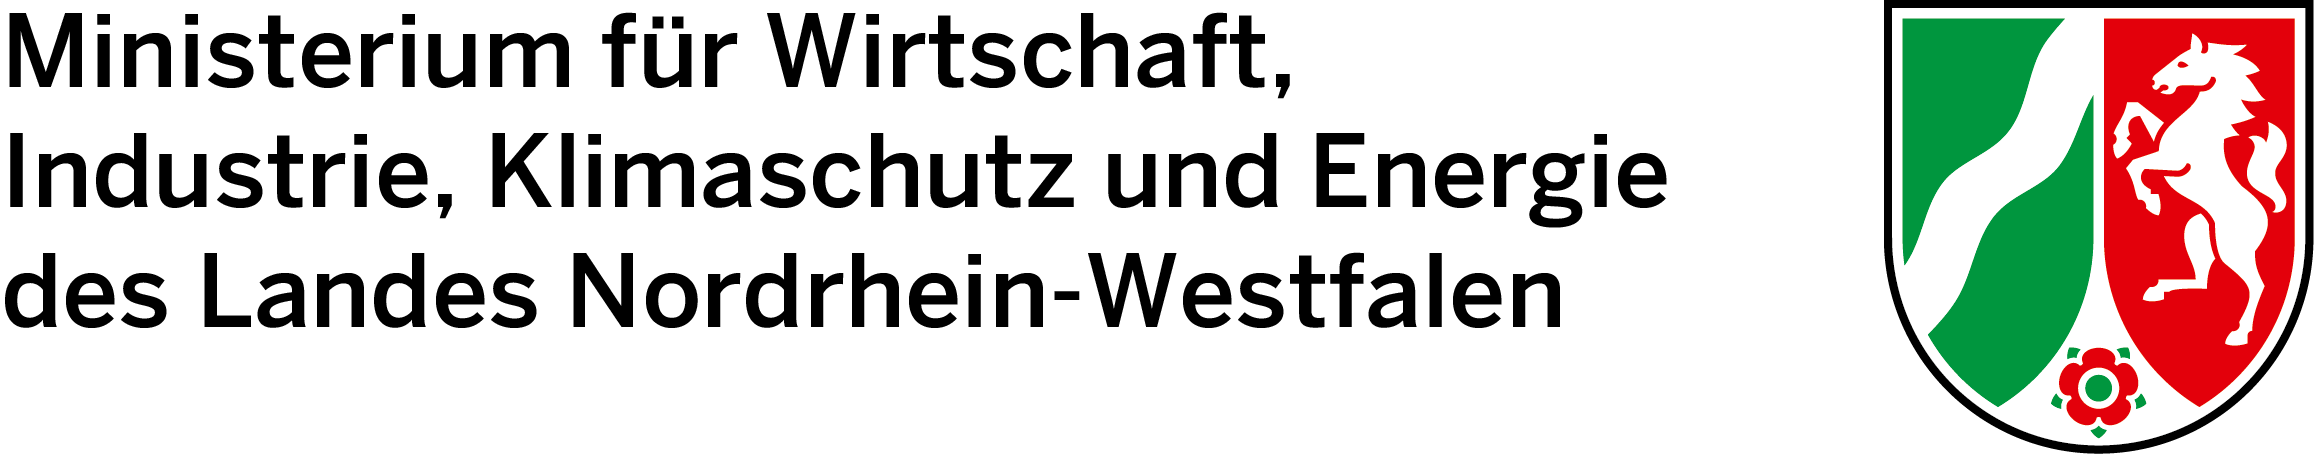 Logo du ministère de l'économie, de l'industrie, de la protection du climat et de l'énergie du Land de Rhénanie du Nord-Westphalie